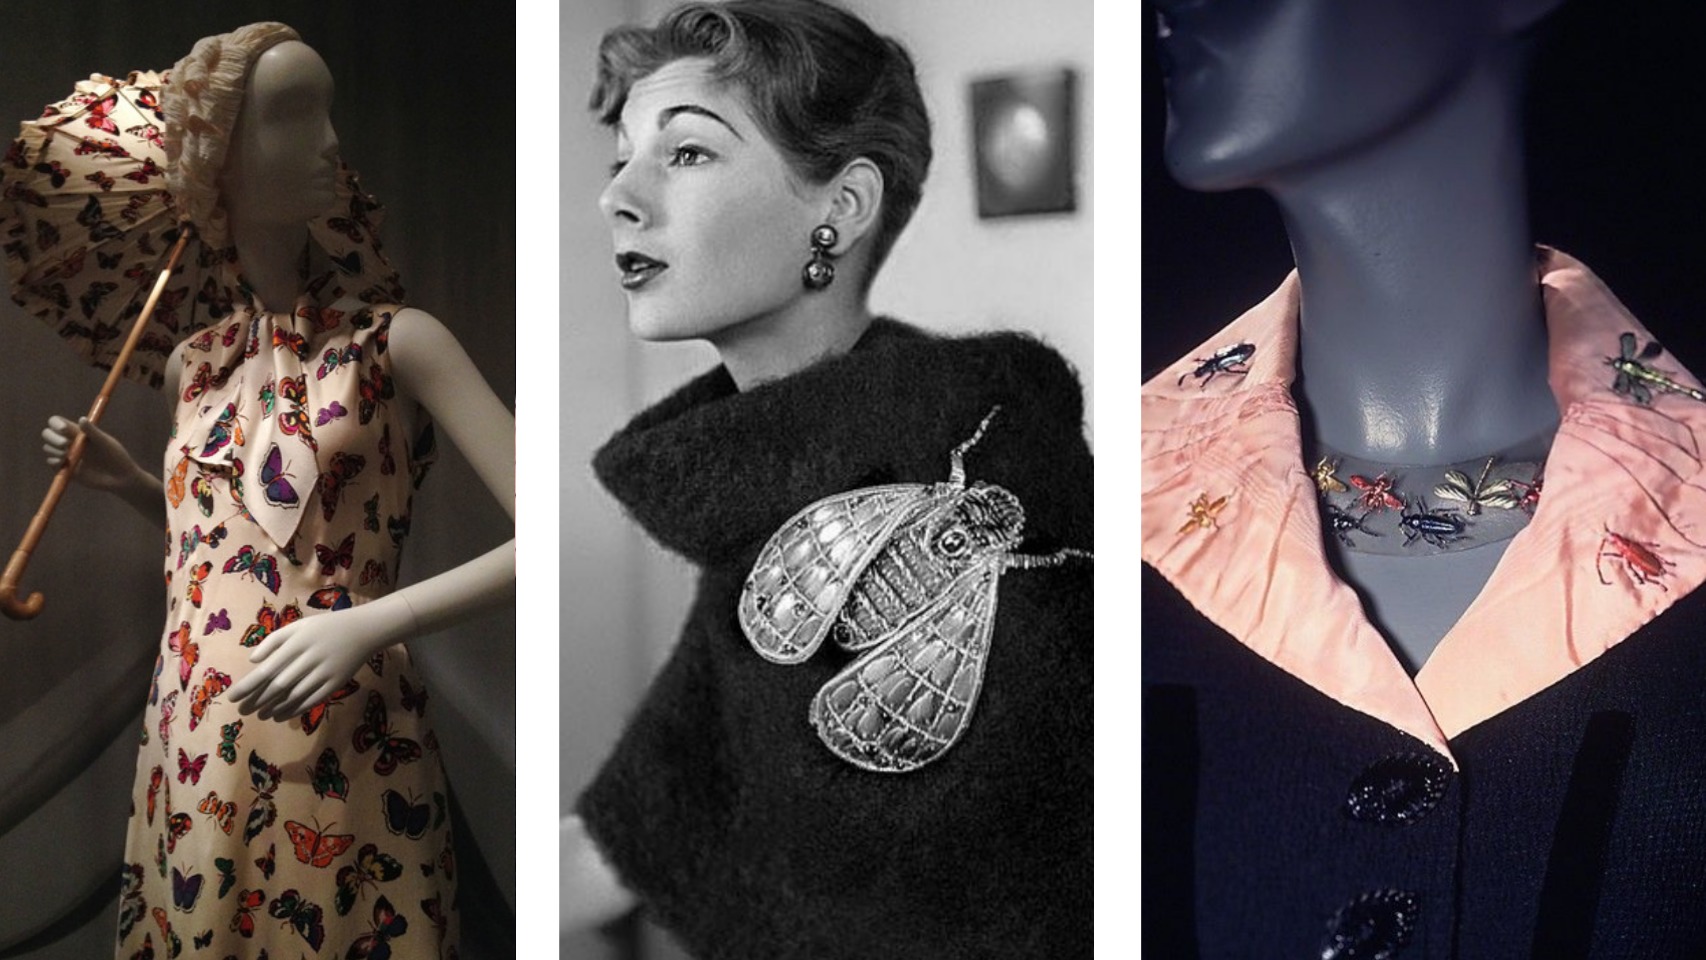 Joyas, prendas y accesorios creados por la diseñadora Elsa Schiaparelli en las que ya aparecían estampados y bordados de insectos.